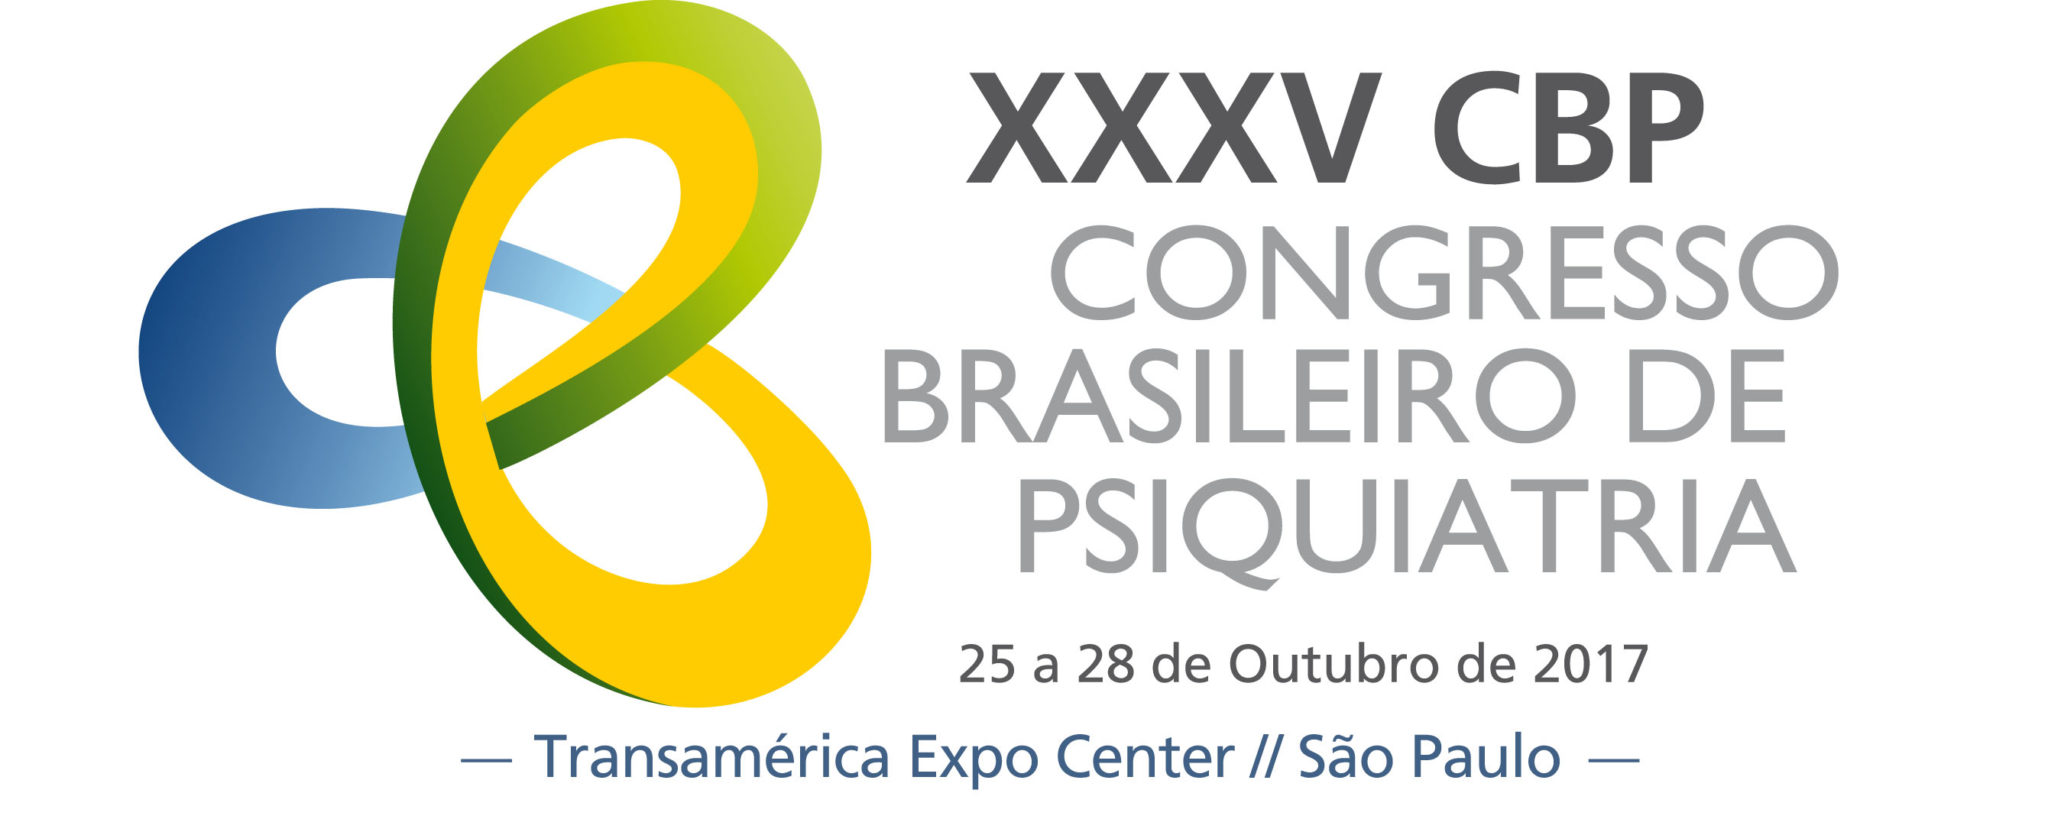 Jorge Jaber participa do XXXV Congresso Brasileiro de Psiquiatria